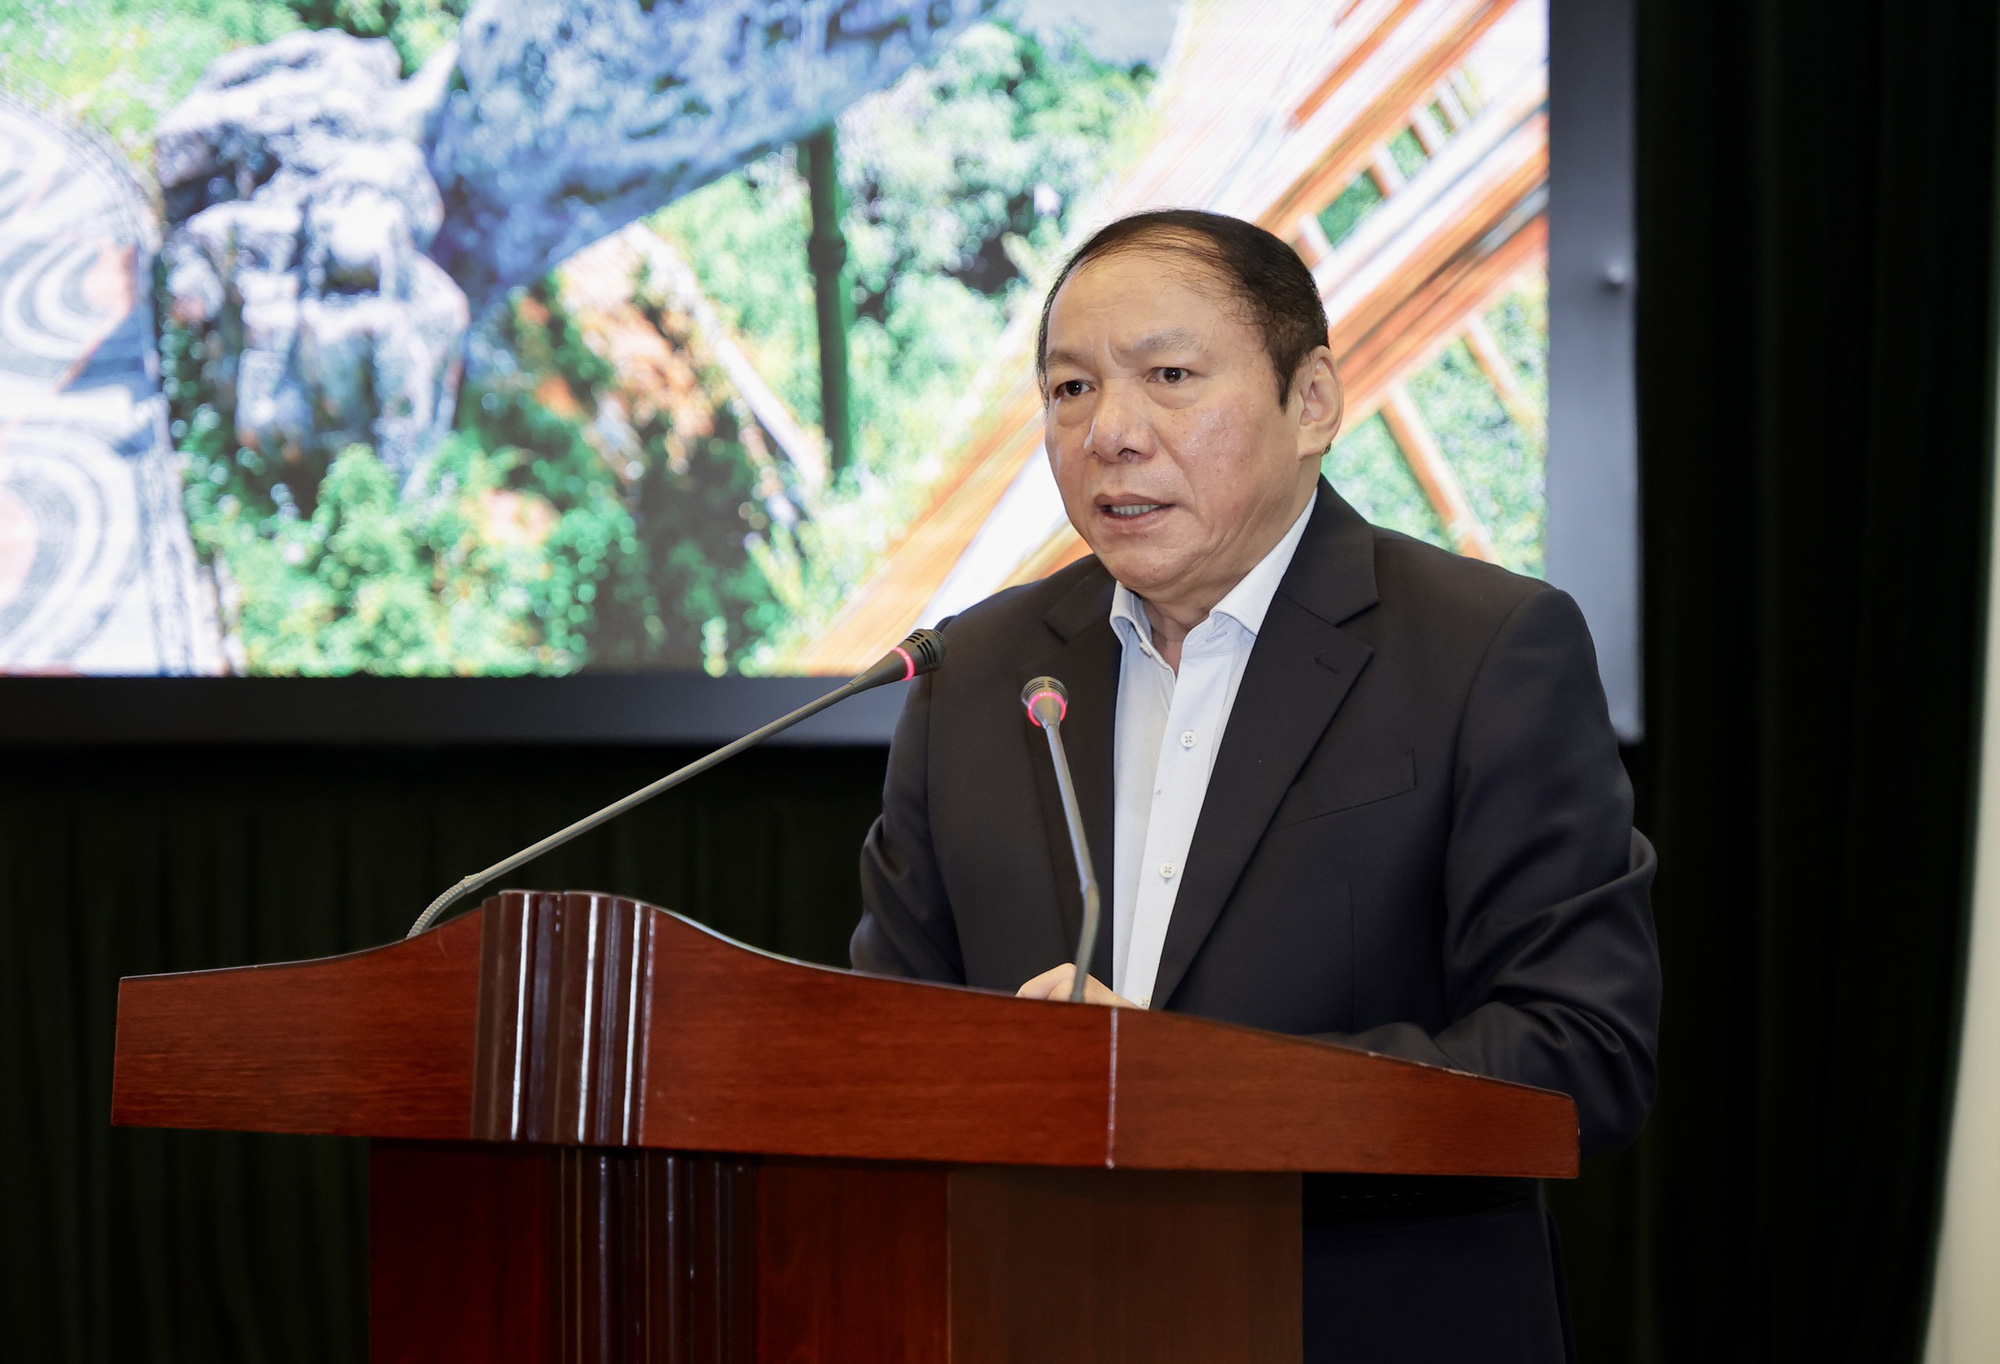 Bộ trưởng Nguyễn Văn Hùng: “Nghiên cứu, dự báo để xác định hướng đi ngành Du lịch không toàn màu hồng, cũng không toàn màu xám xịt” - Ảnh 2.